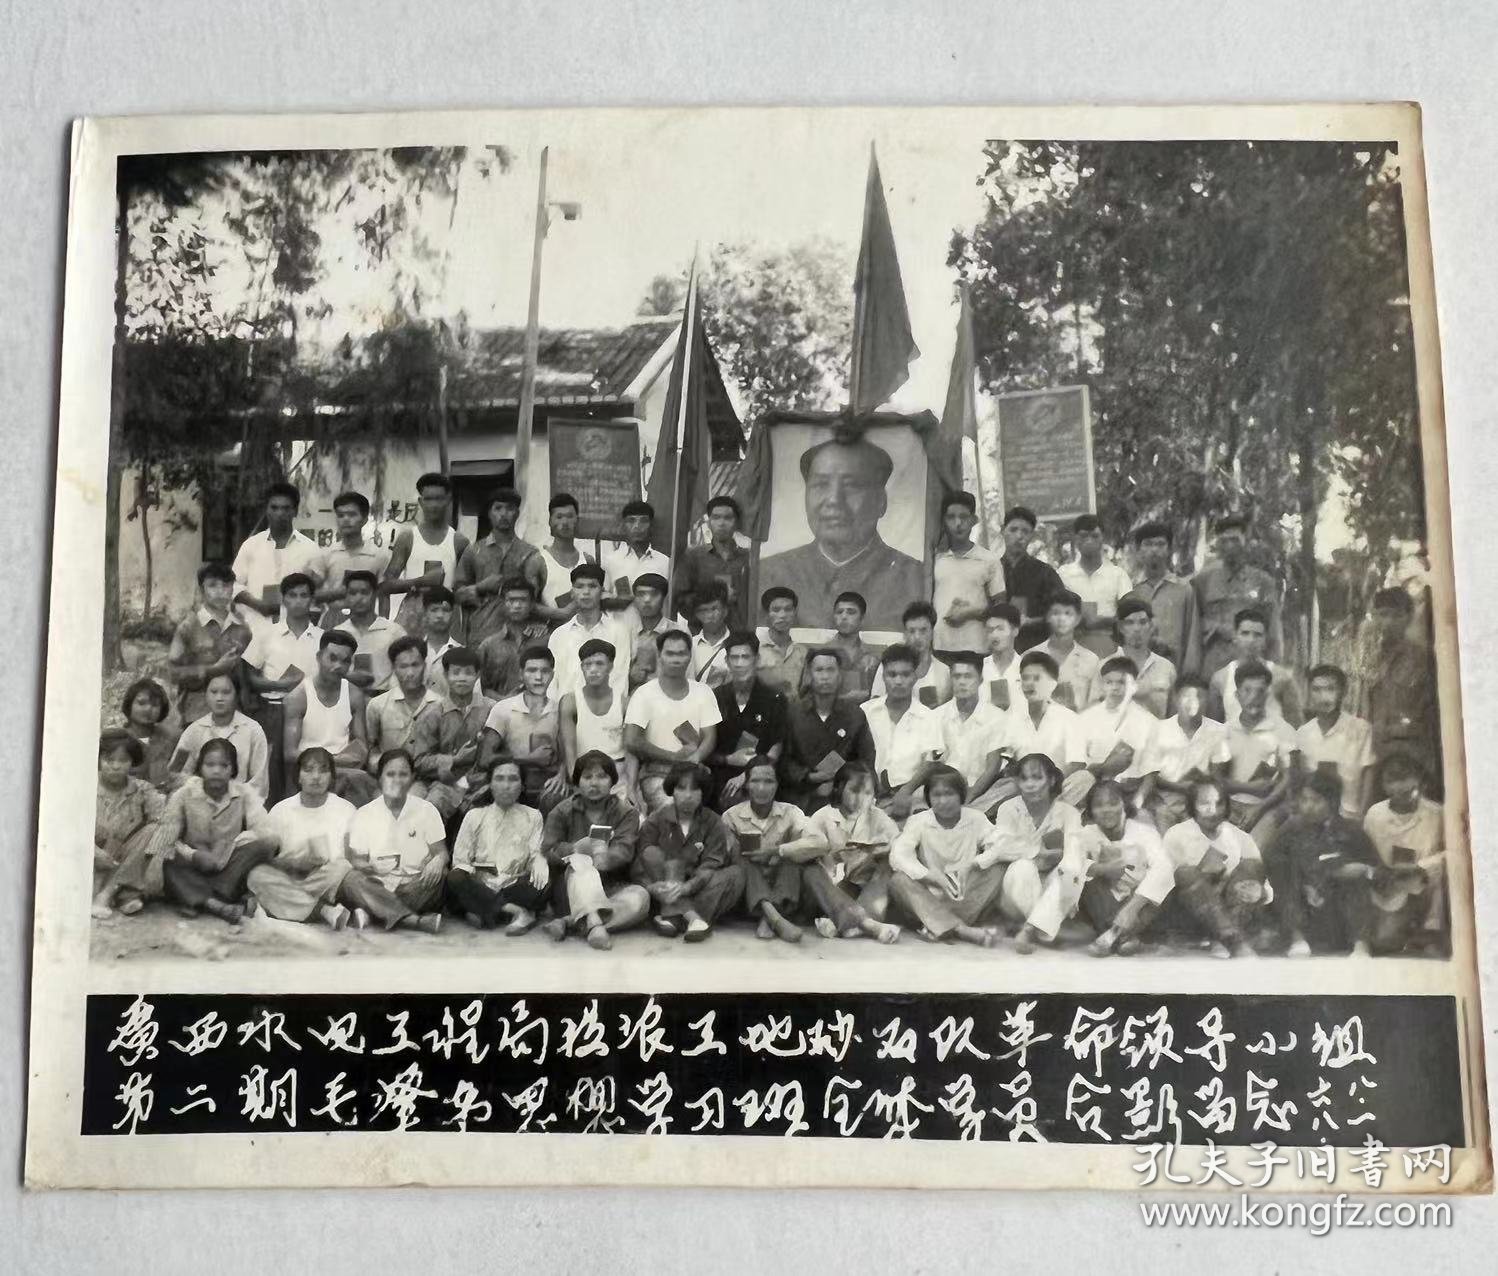 1968年8月1日 广西省水电工程局革命领导小组第二期毛泽东思想学习班全体合影留念！老照片